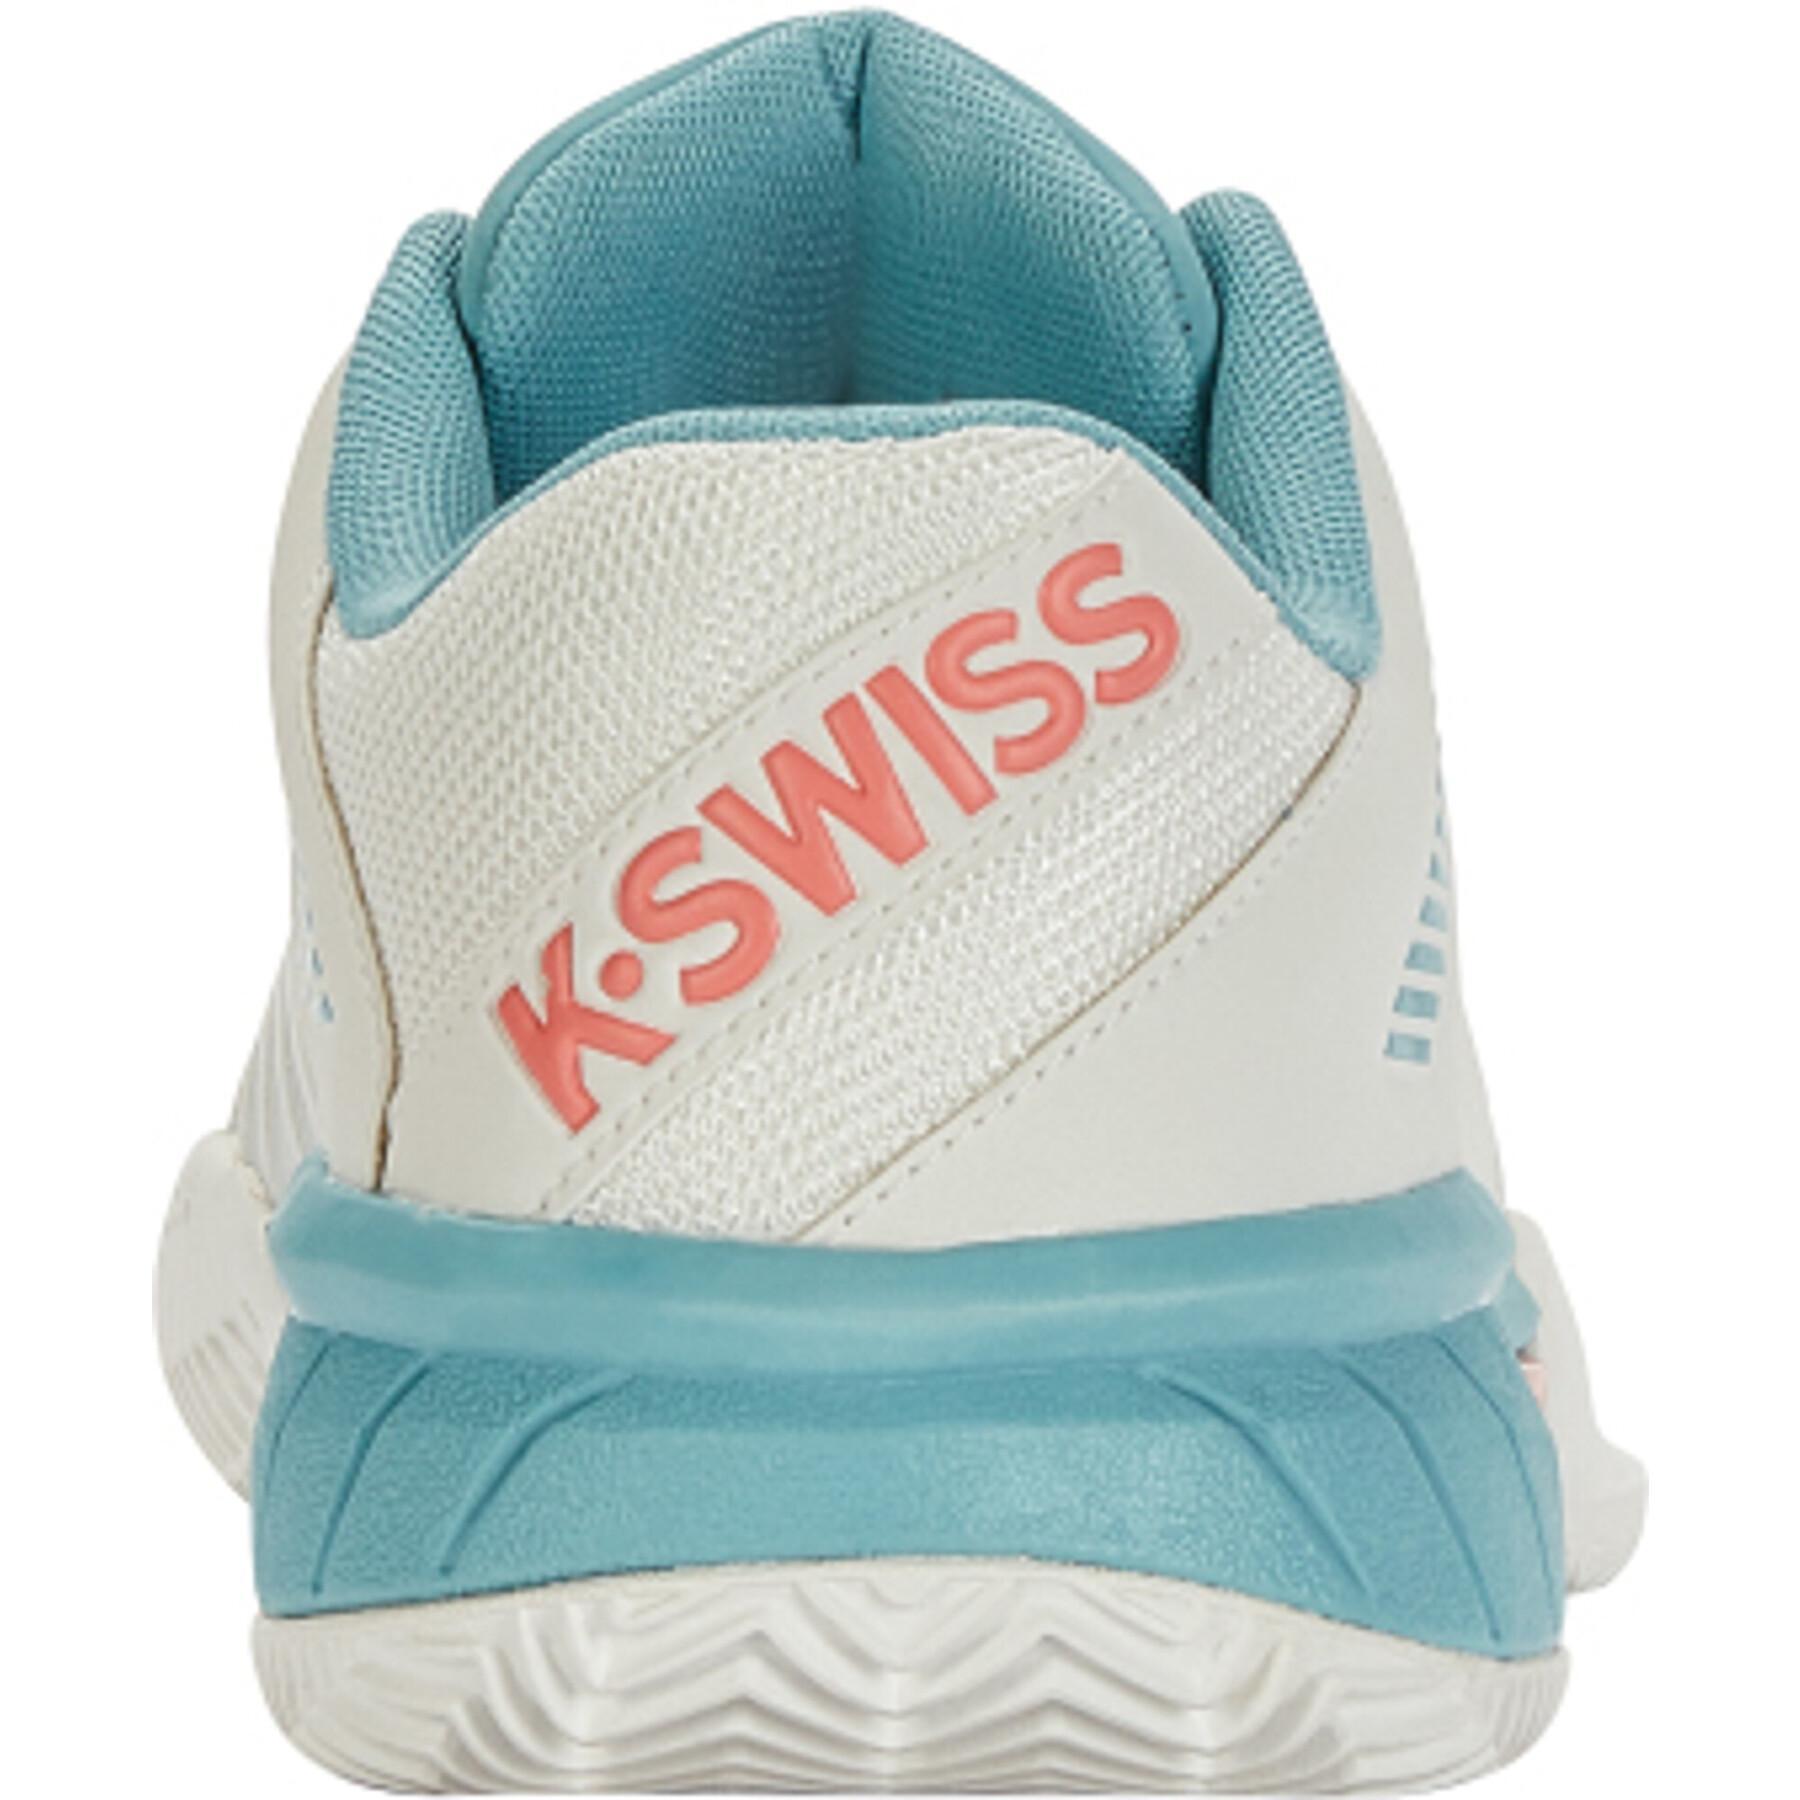 Women's tennis shoes K-Swiss Express Light 3 Hb